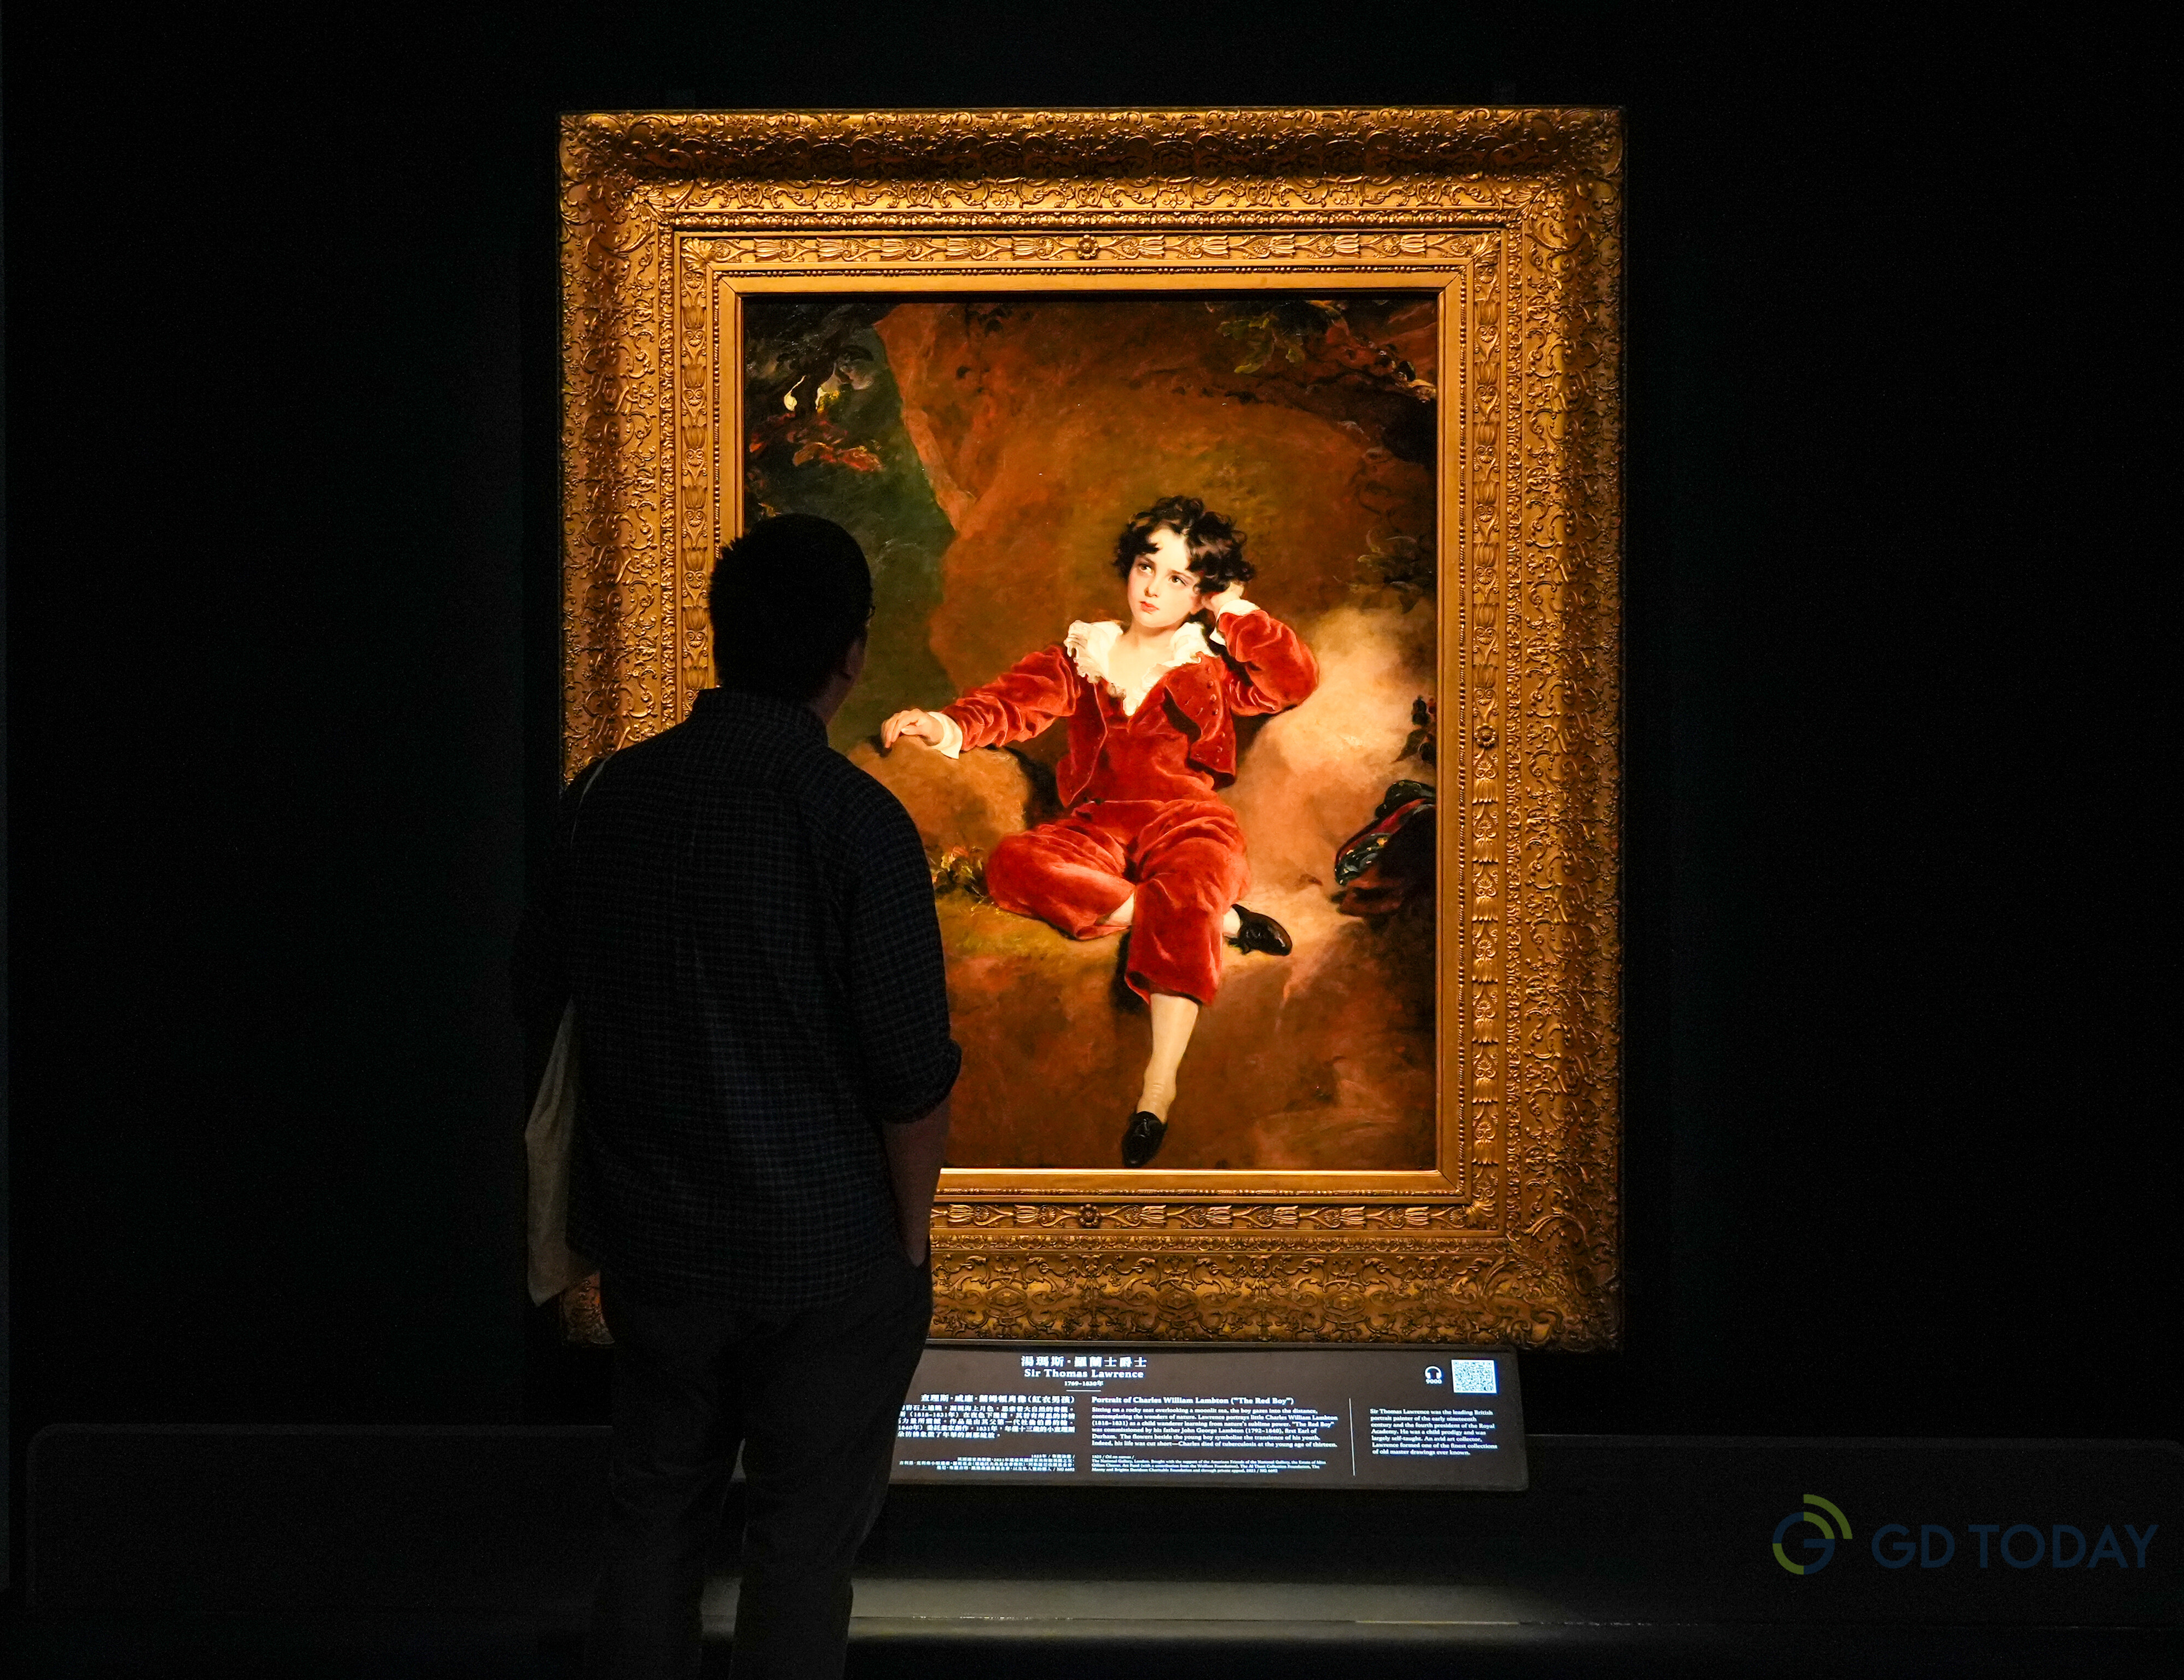 托馬斯·勞倫斯爵士的《查爾斯·威廉·蘭姆頓肖像》（紅衣男孩）